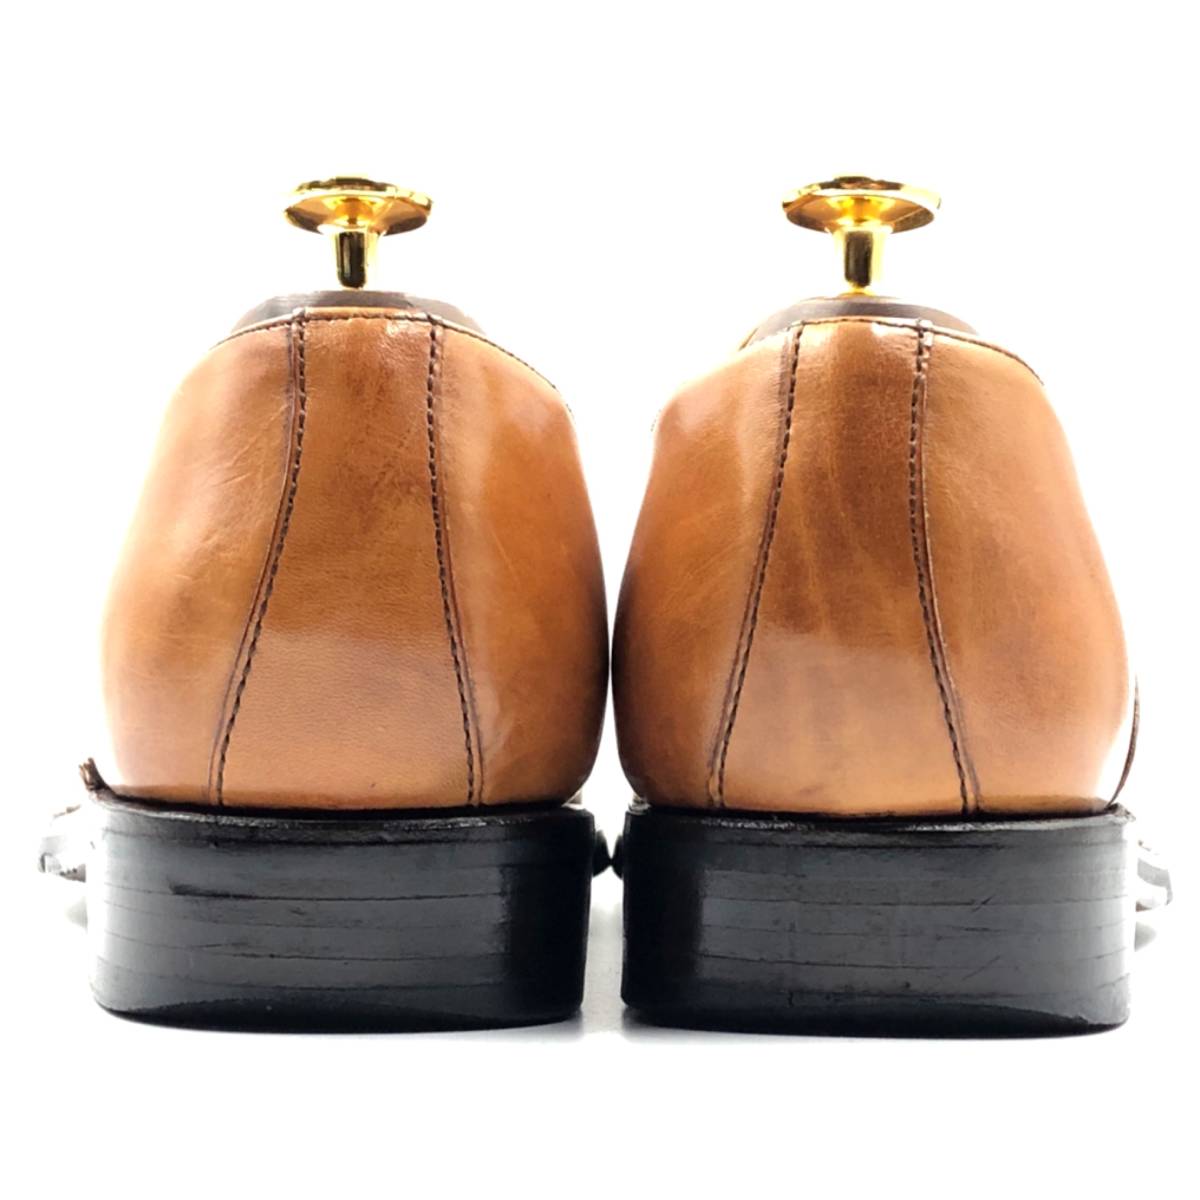 即決 Berwick バーウィック 25.5cm 40.5 2428 メンズ レザーシューズ ストレートチップ 内羽根 茶 ブラウン 革靴 皮靴 ビジネスシューズ